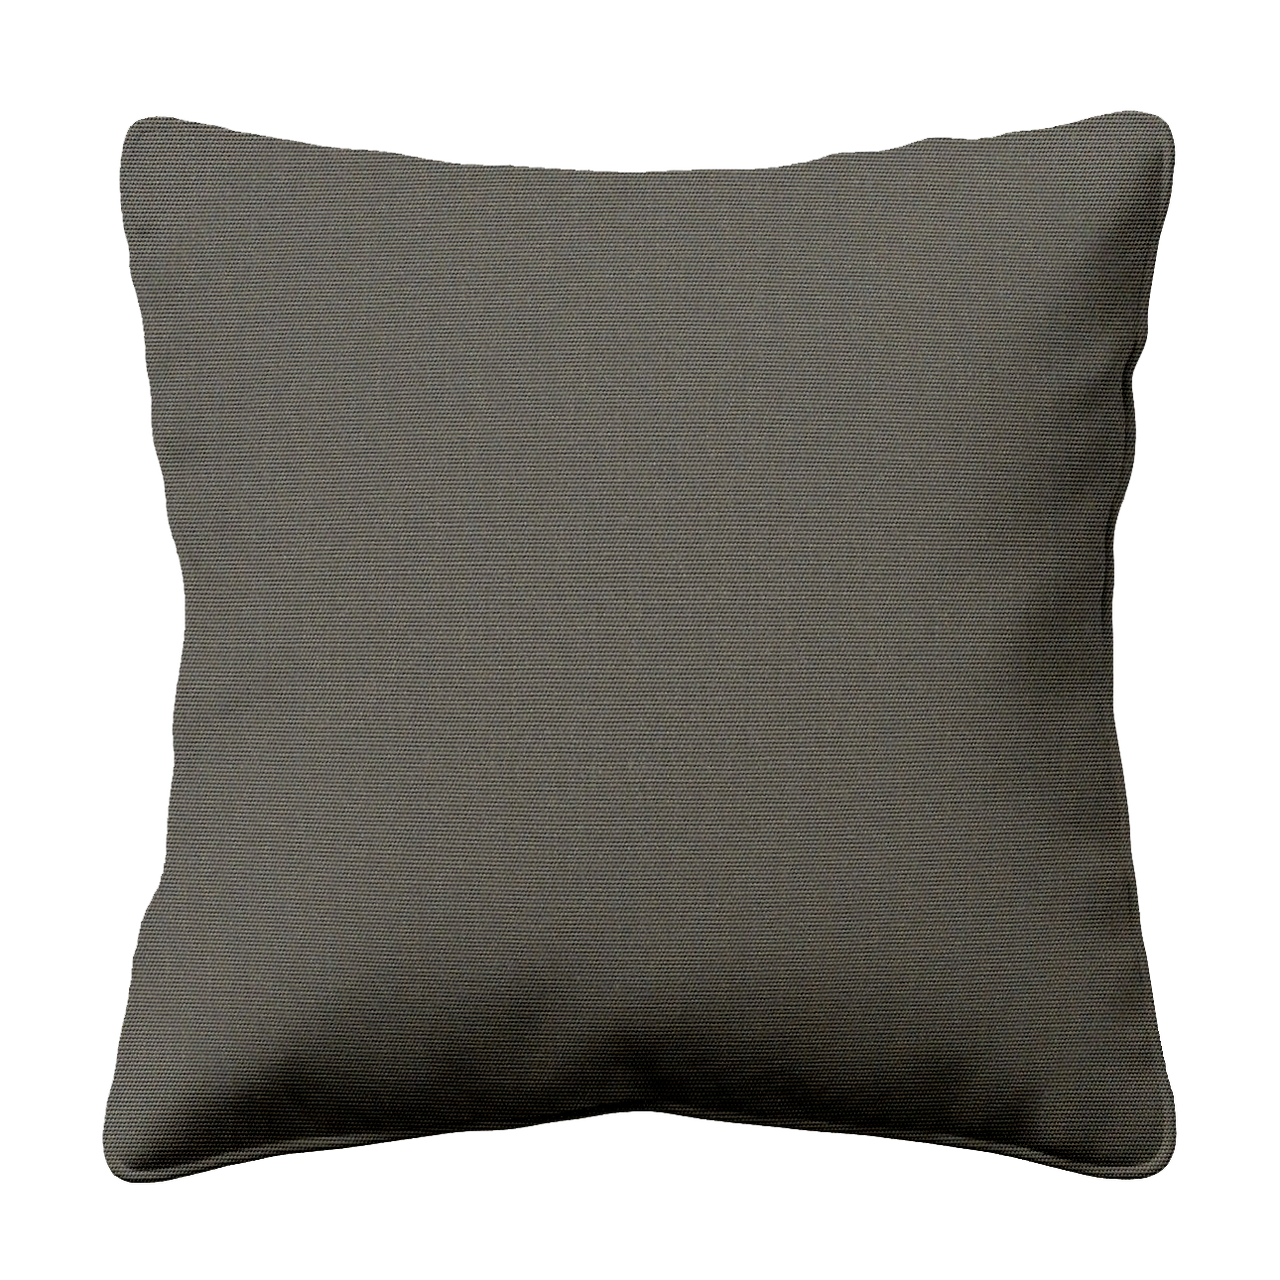 Marine Charcoal Grey Sunbrella Outdoor Cushion